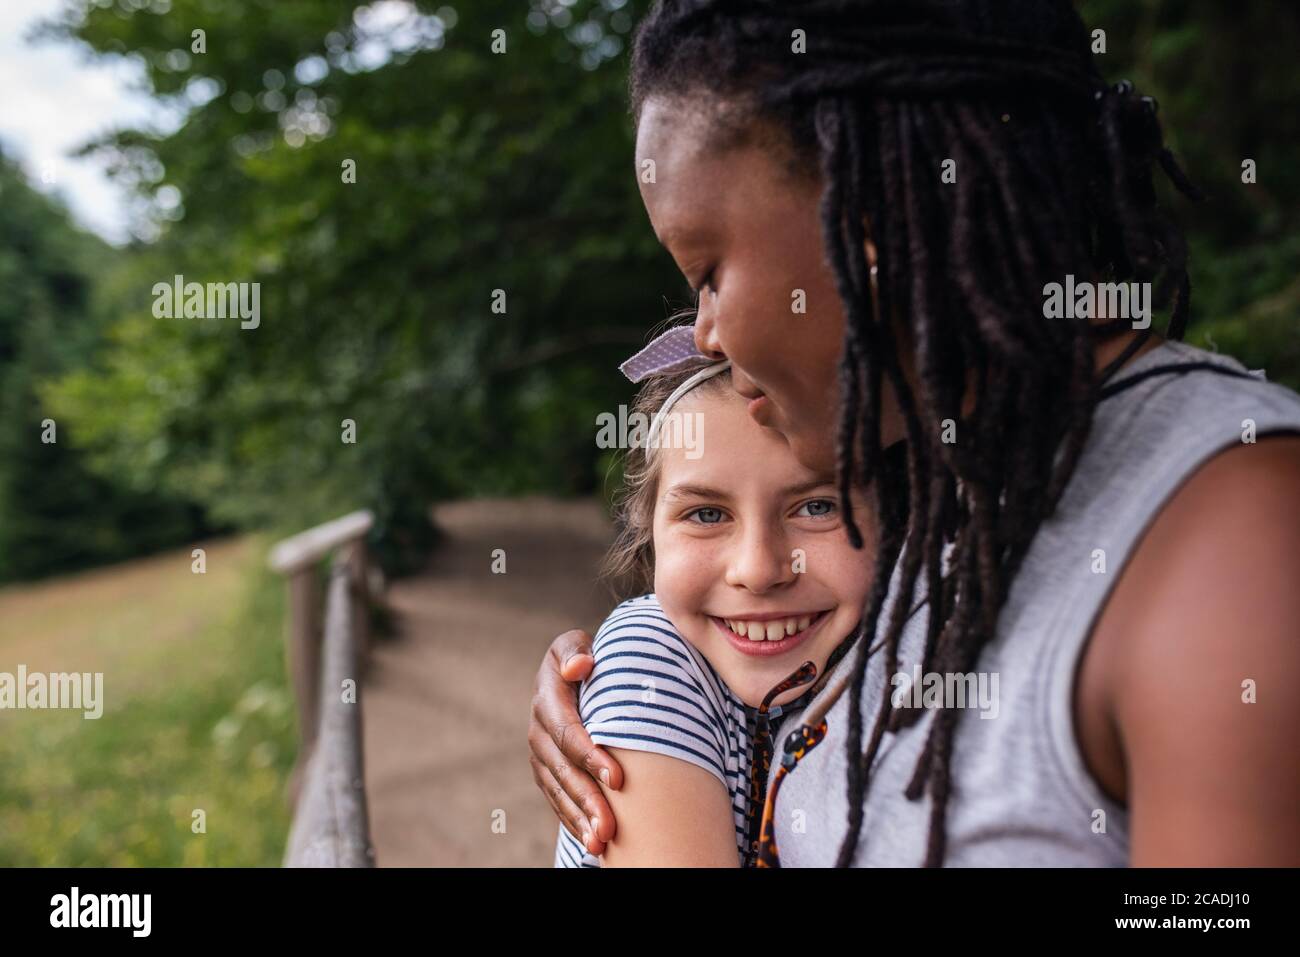 Portrait eines lächelnden kleinen Mädchens, das liebevoll ihren Freund umarmt, während er eine Pause von ihrer gemeinsamen Wanderung nimmt Stockfoto